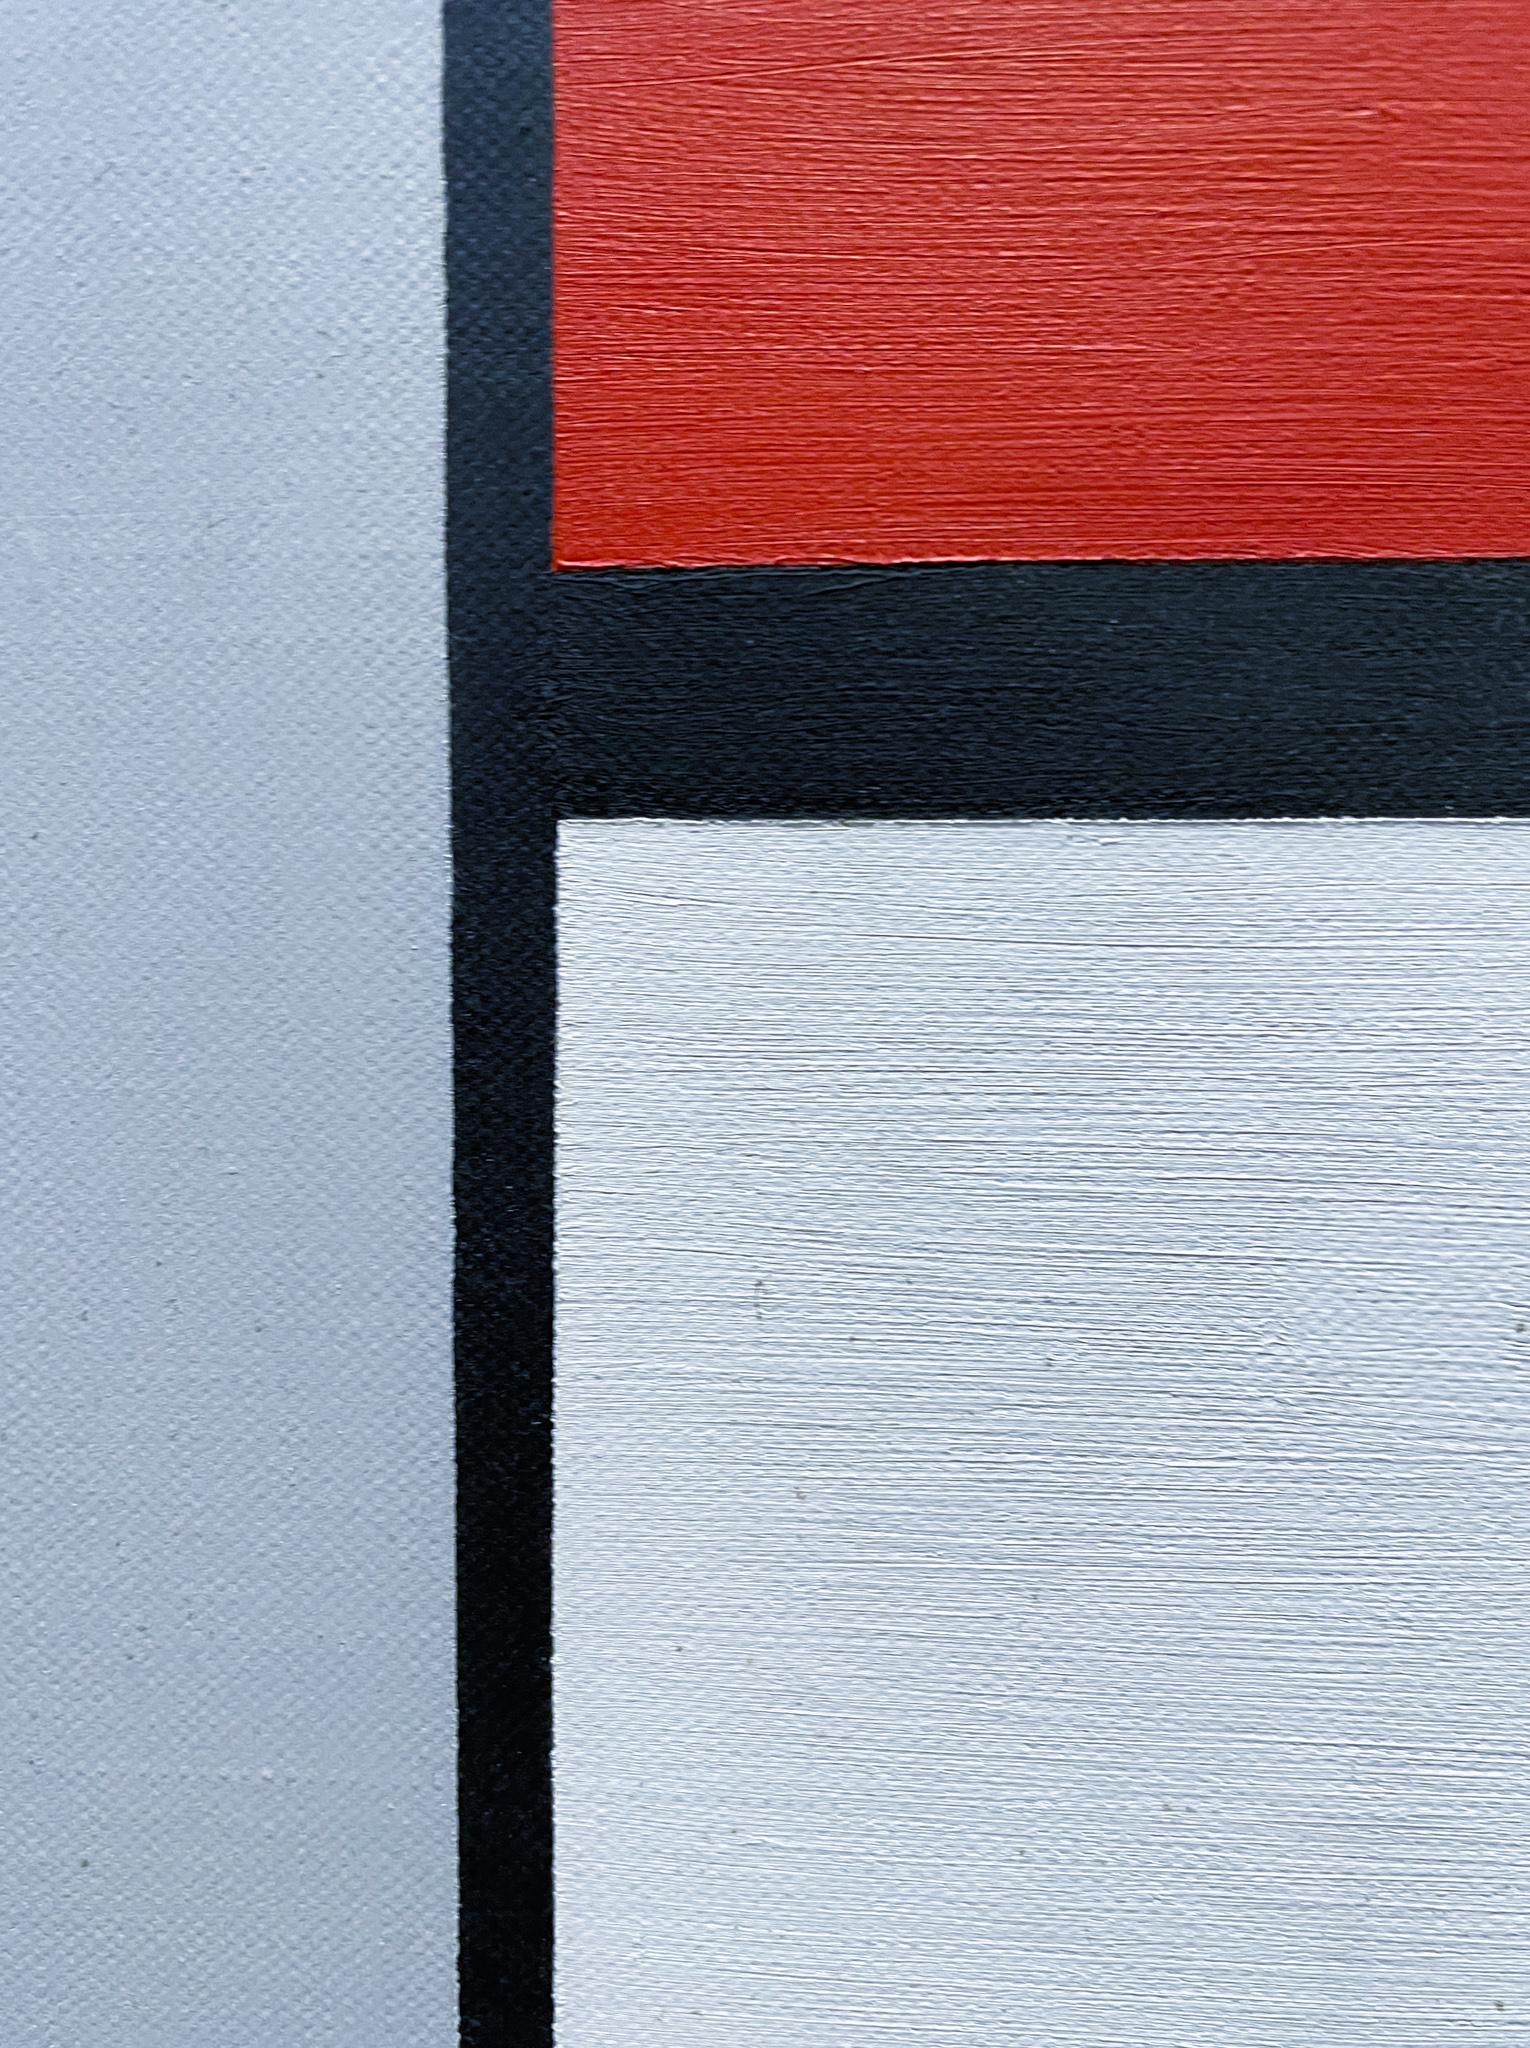 Ligne, couleur, forme numéro 1, 1959, par Albert Manchak (né en 1925)
Huile sur toile
35 ½ x 35 ½ pouces non encadré
37 x 37 pouces encadré
Signé en bas à droite
Étiqueté (ALBERT MANCHAK Line, Color, Form Number 1 Geometric Abstraction in America